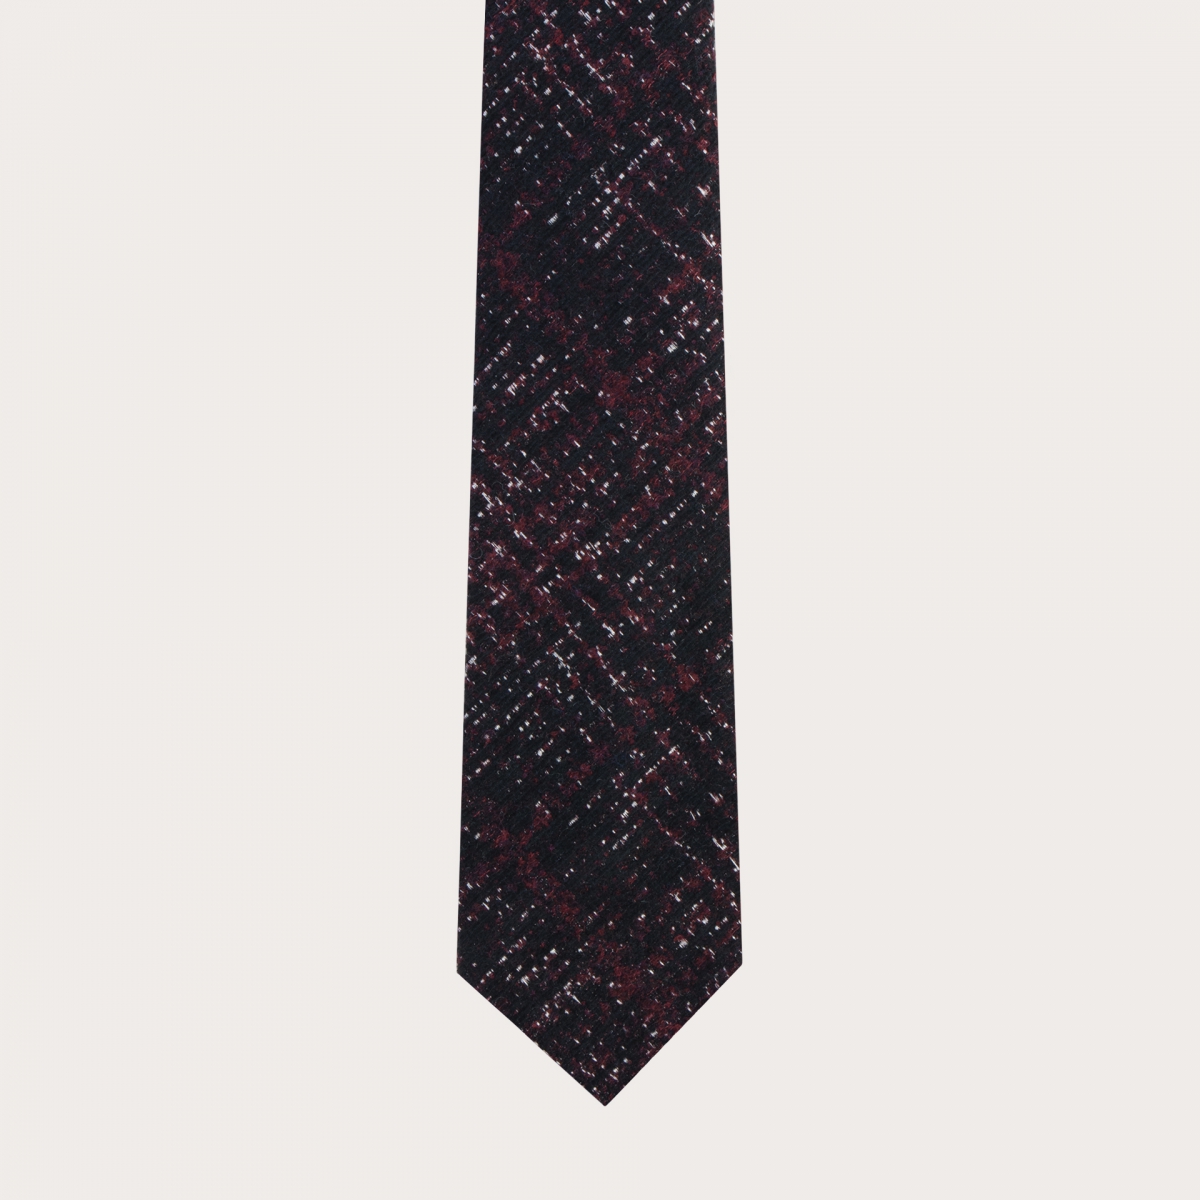 BRUCLE Ungefütterte Krawatte tartanmuster rot schwarz